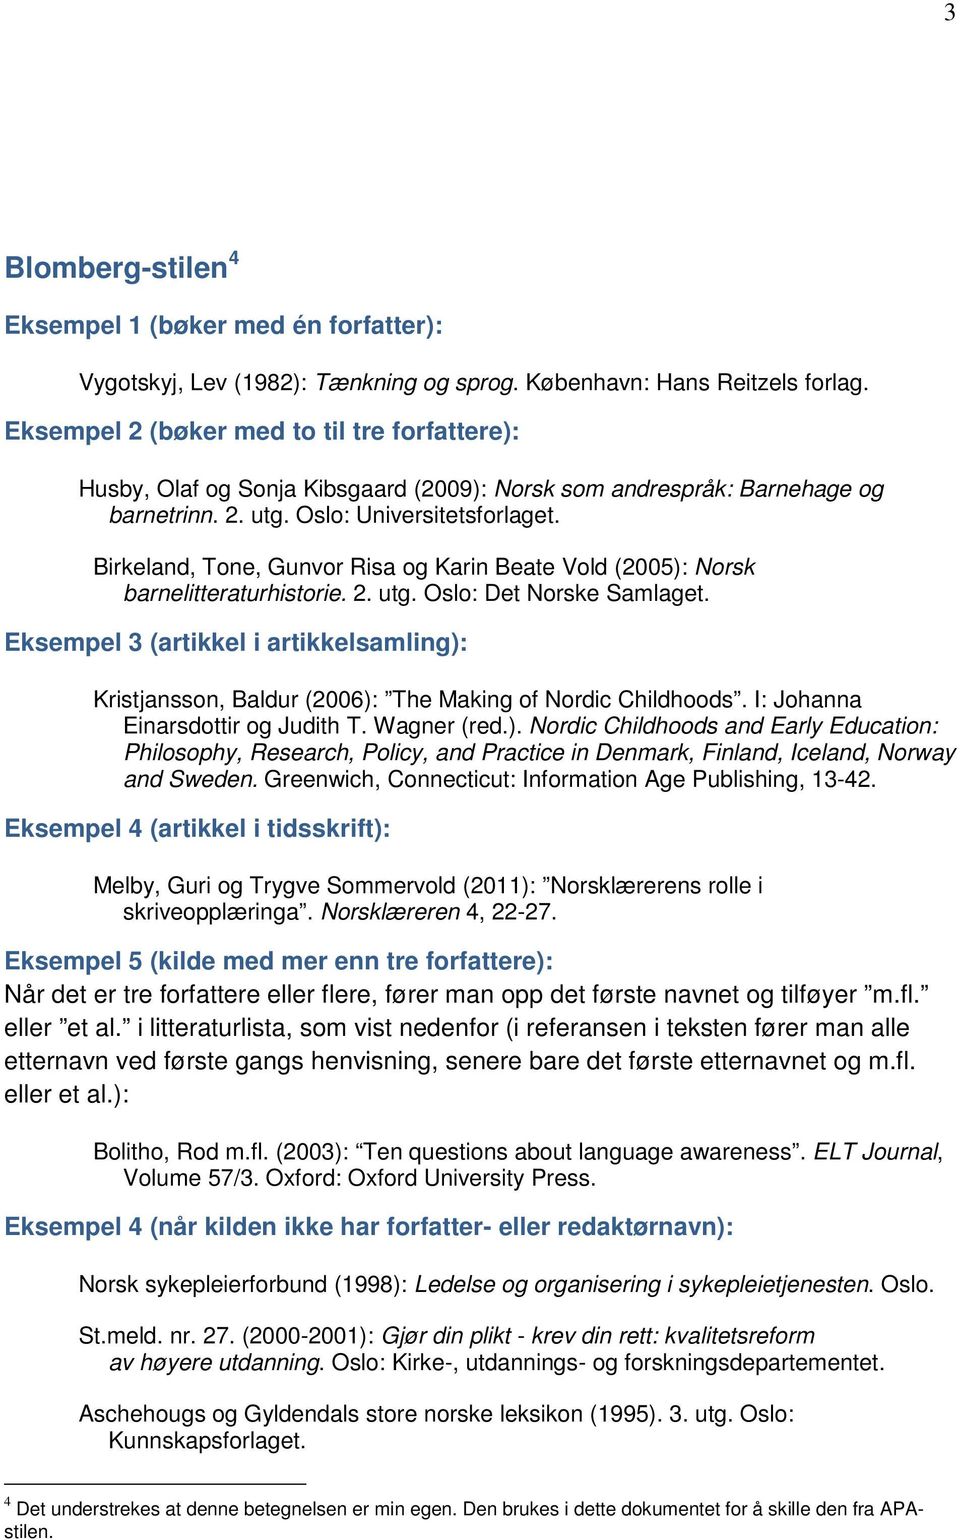 Birkeland, Tone, Gunvor Risa og Karin Beate Vold (2005): Norsk barnelitteraturhistorie. 2. utg. Oslo: Det Norske Samlaget.